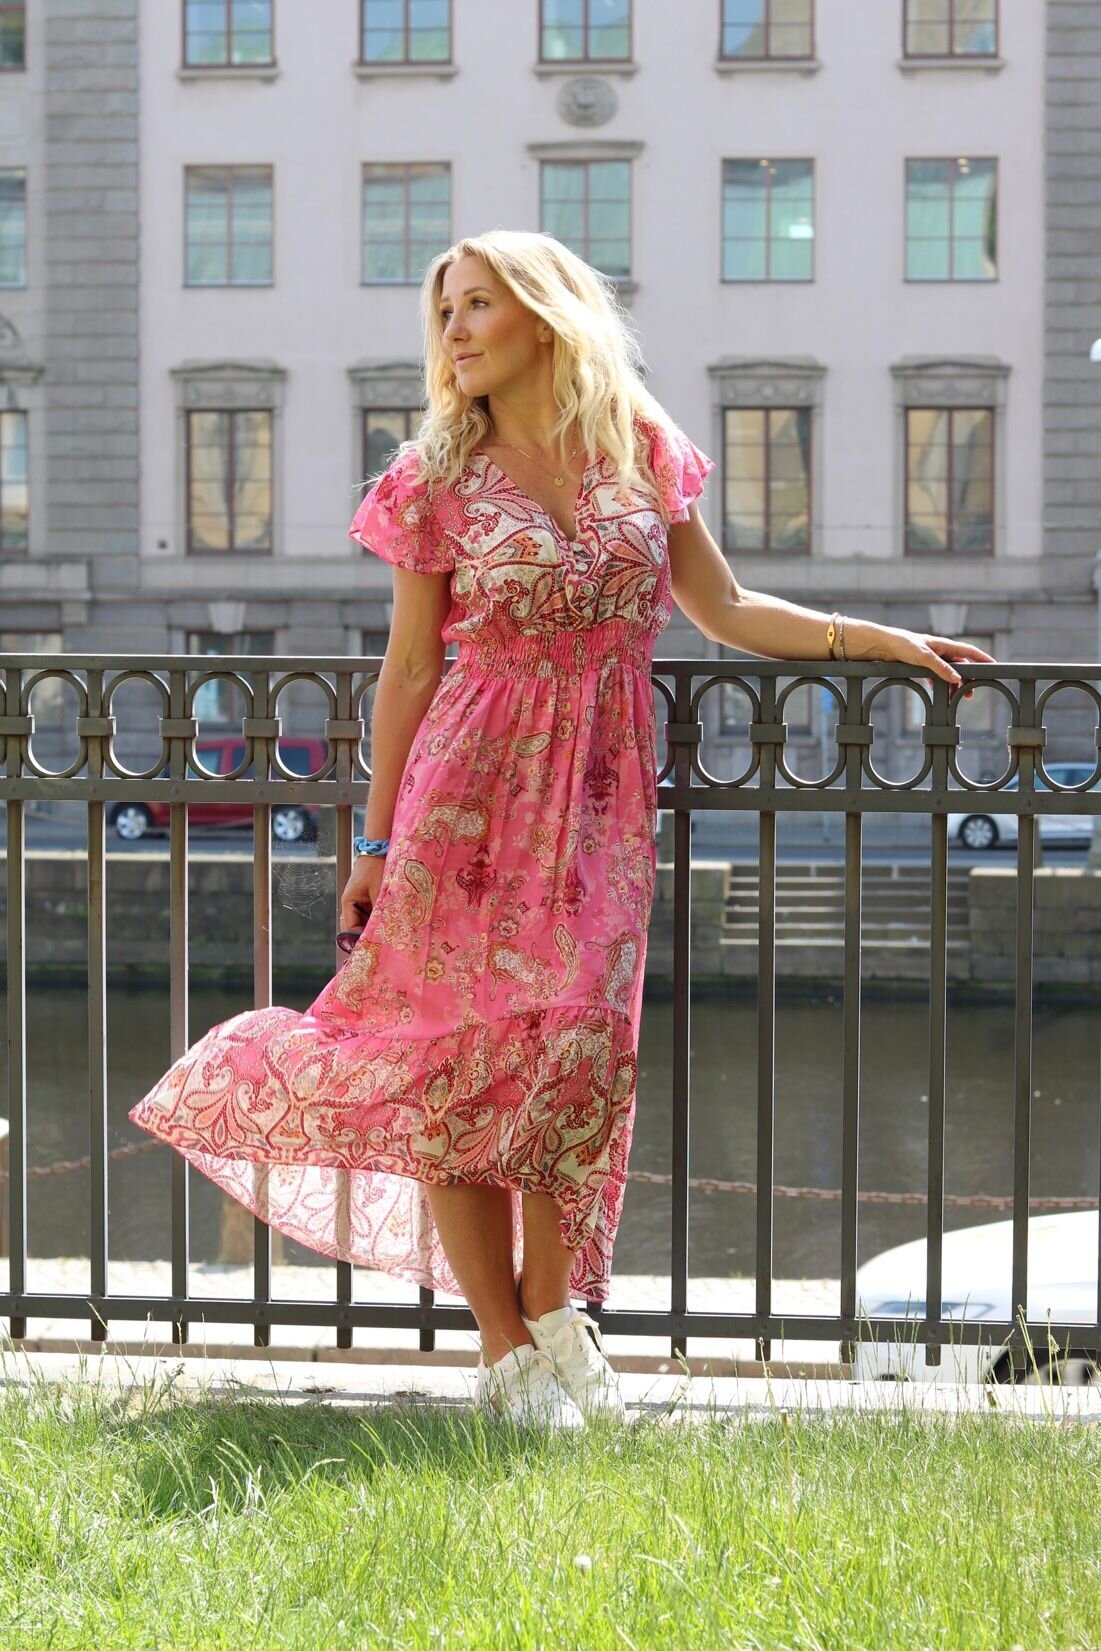 Victoria långklänning - Paisleymönster - Rosa